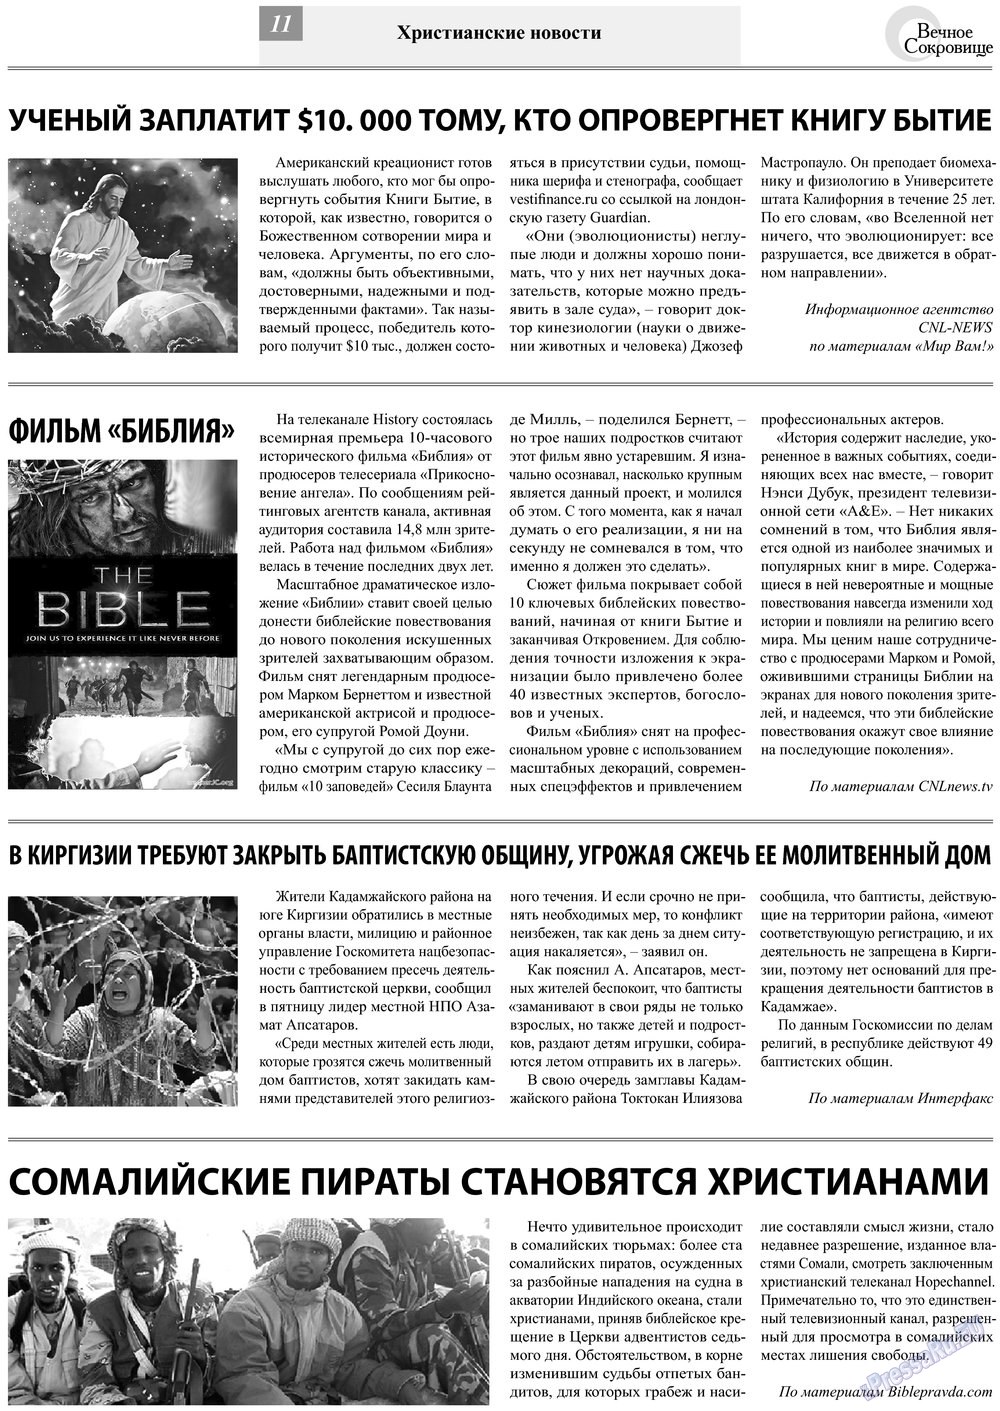 Вечное сокровище (газета). 2013 год, номер 3, стр. 11